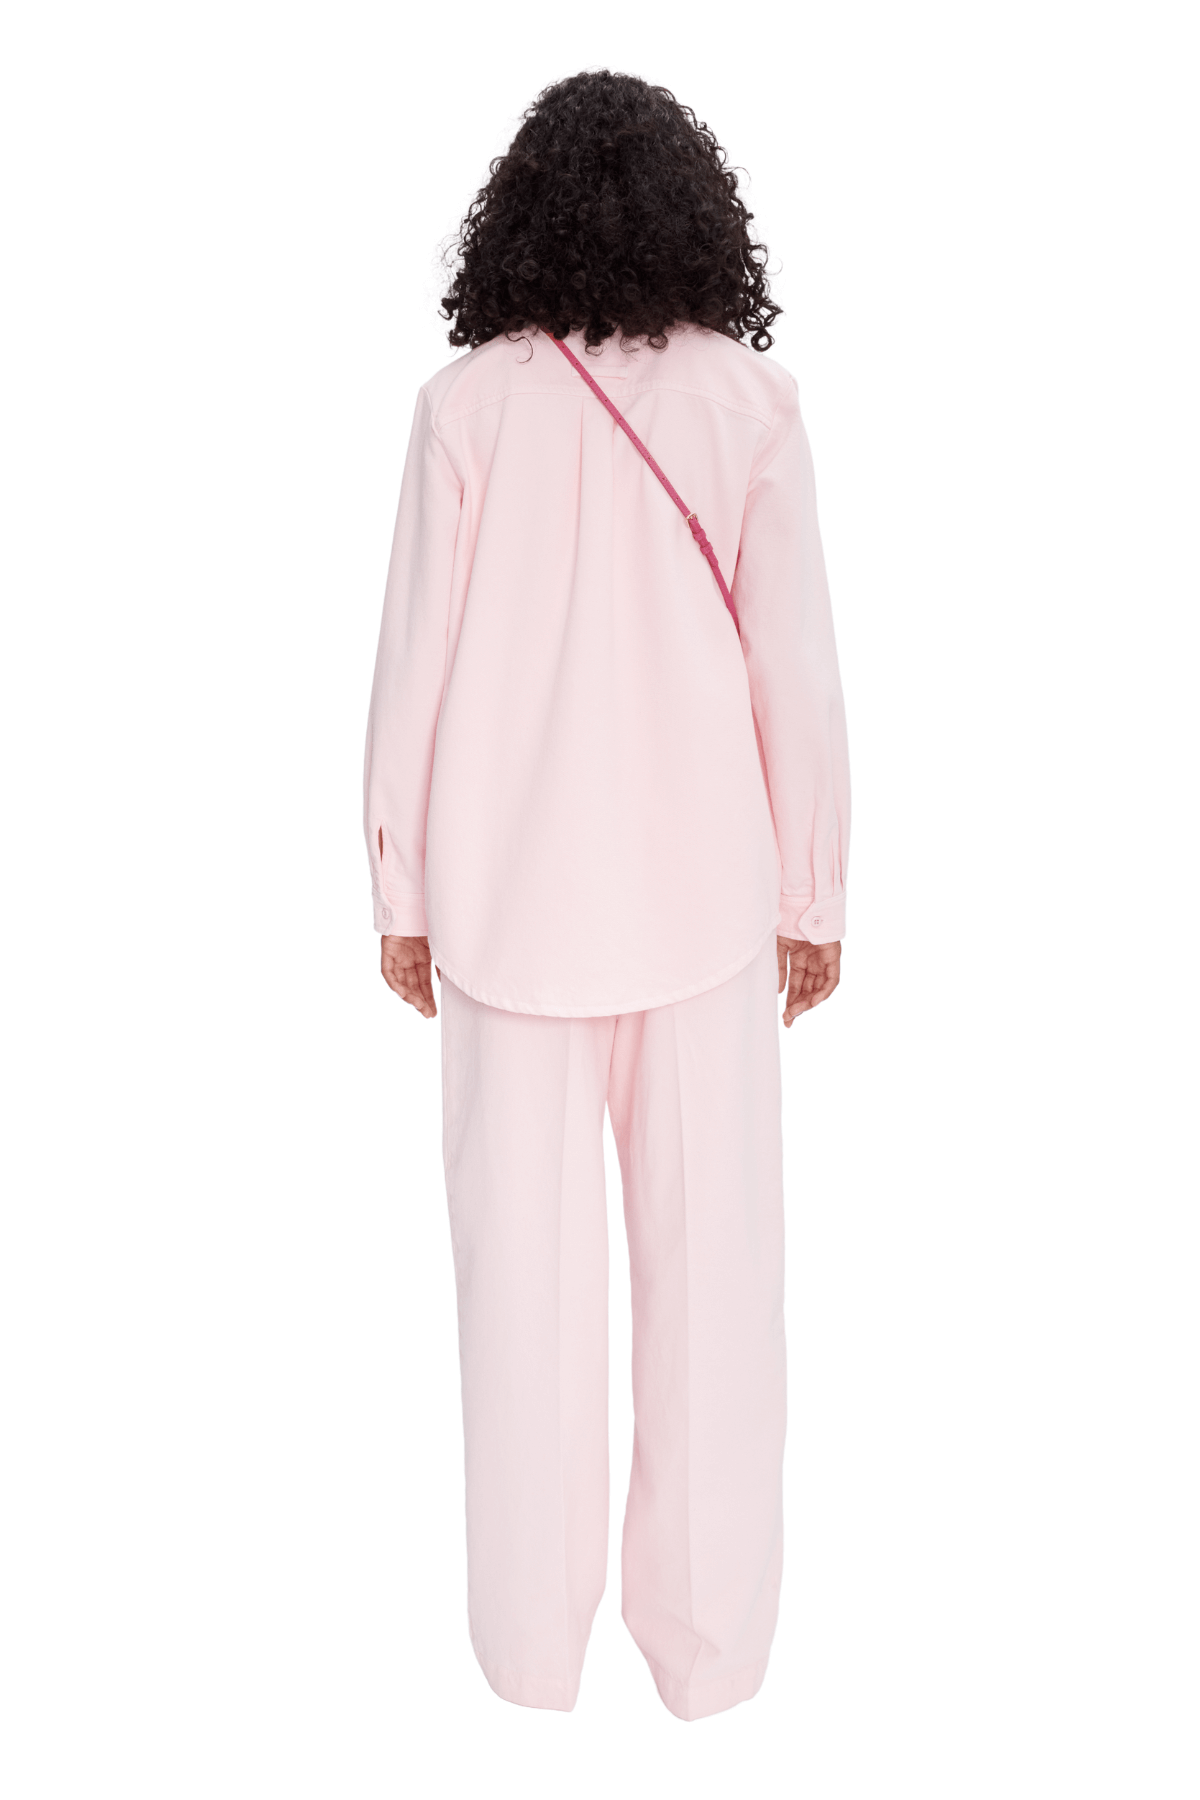 A.P.C. Tina Organic Cotton Denim Shirt - Pale Pink